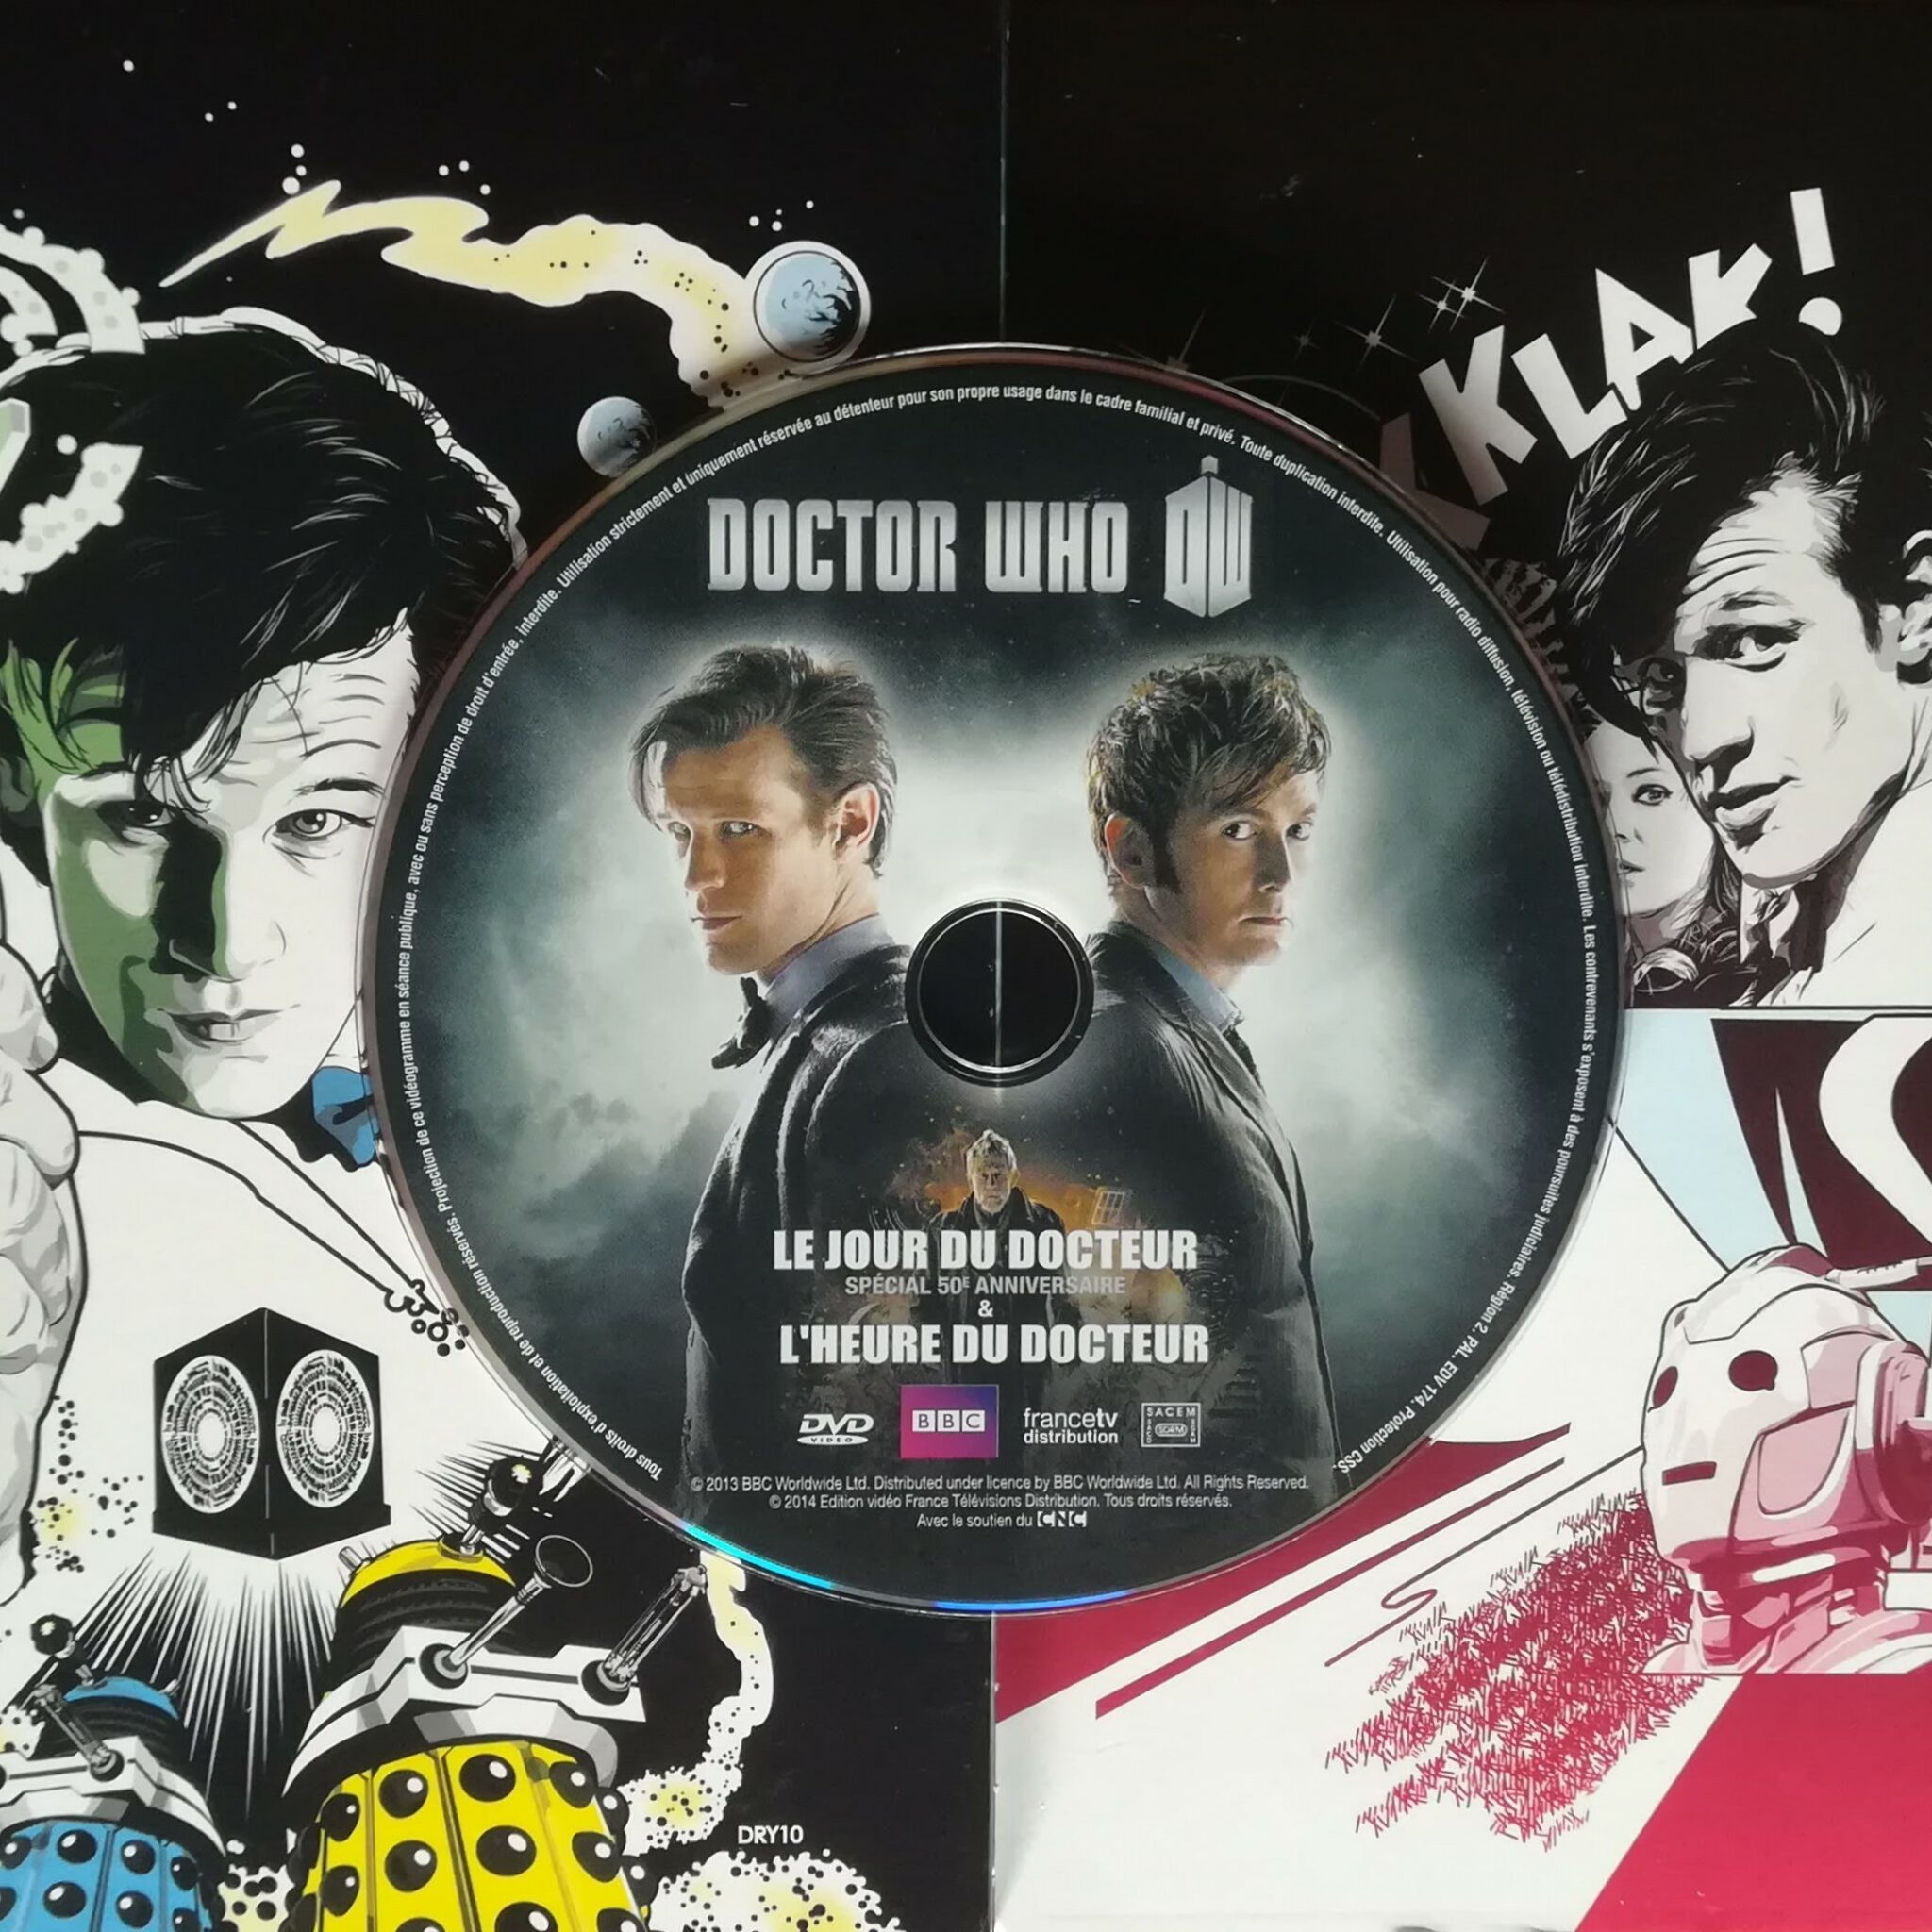 Le DVD de l'épisode spécial "le jour du Docteur" est posé sur le coffret DVD de la saison 5.